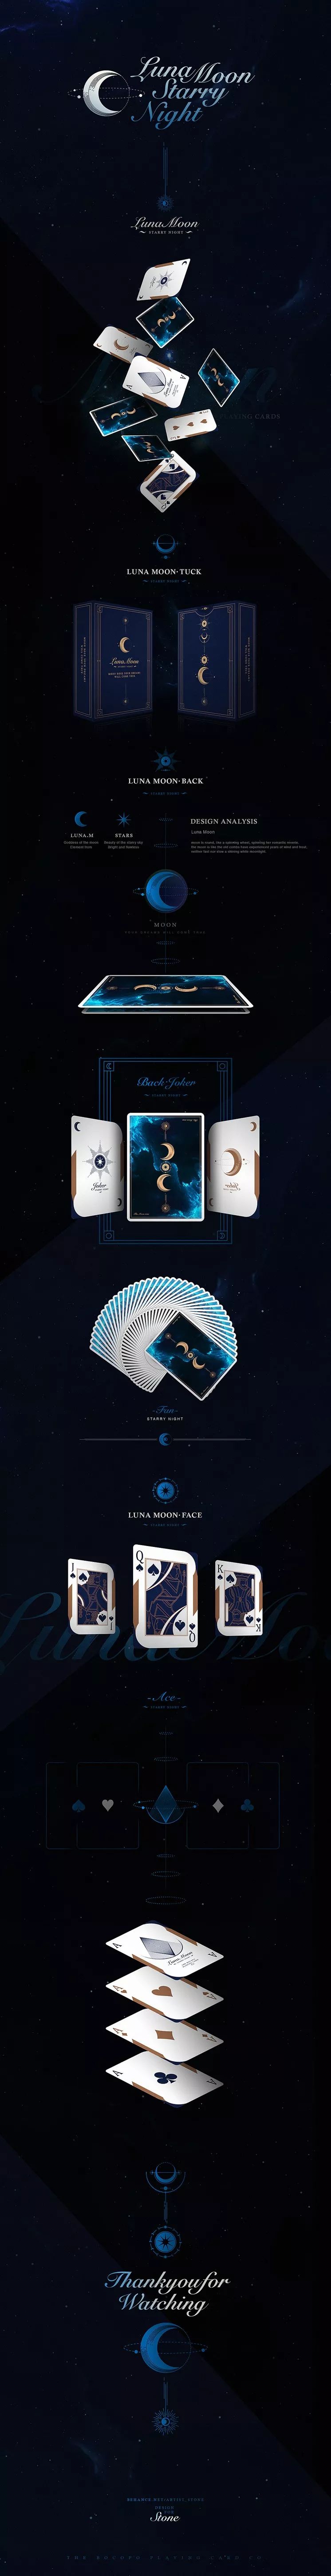 粉丝投稿|纸牌设计——月神扑克牌还可以这样玩—luna